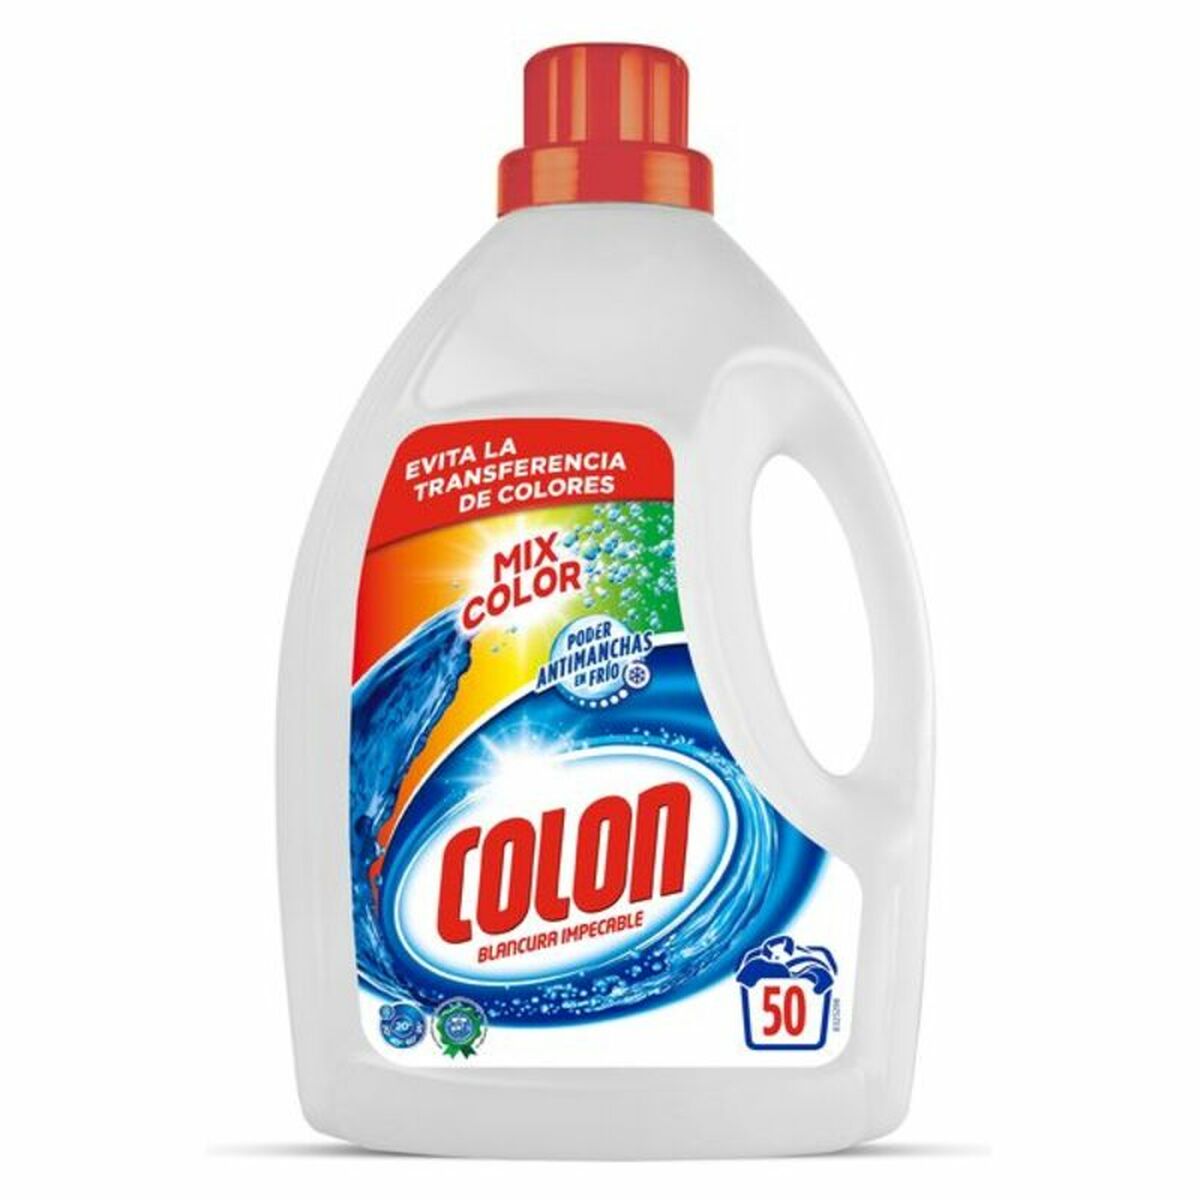 Colon Mixcolor Liquid Detergent, 3.1 L (50 Washes)